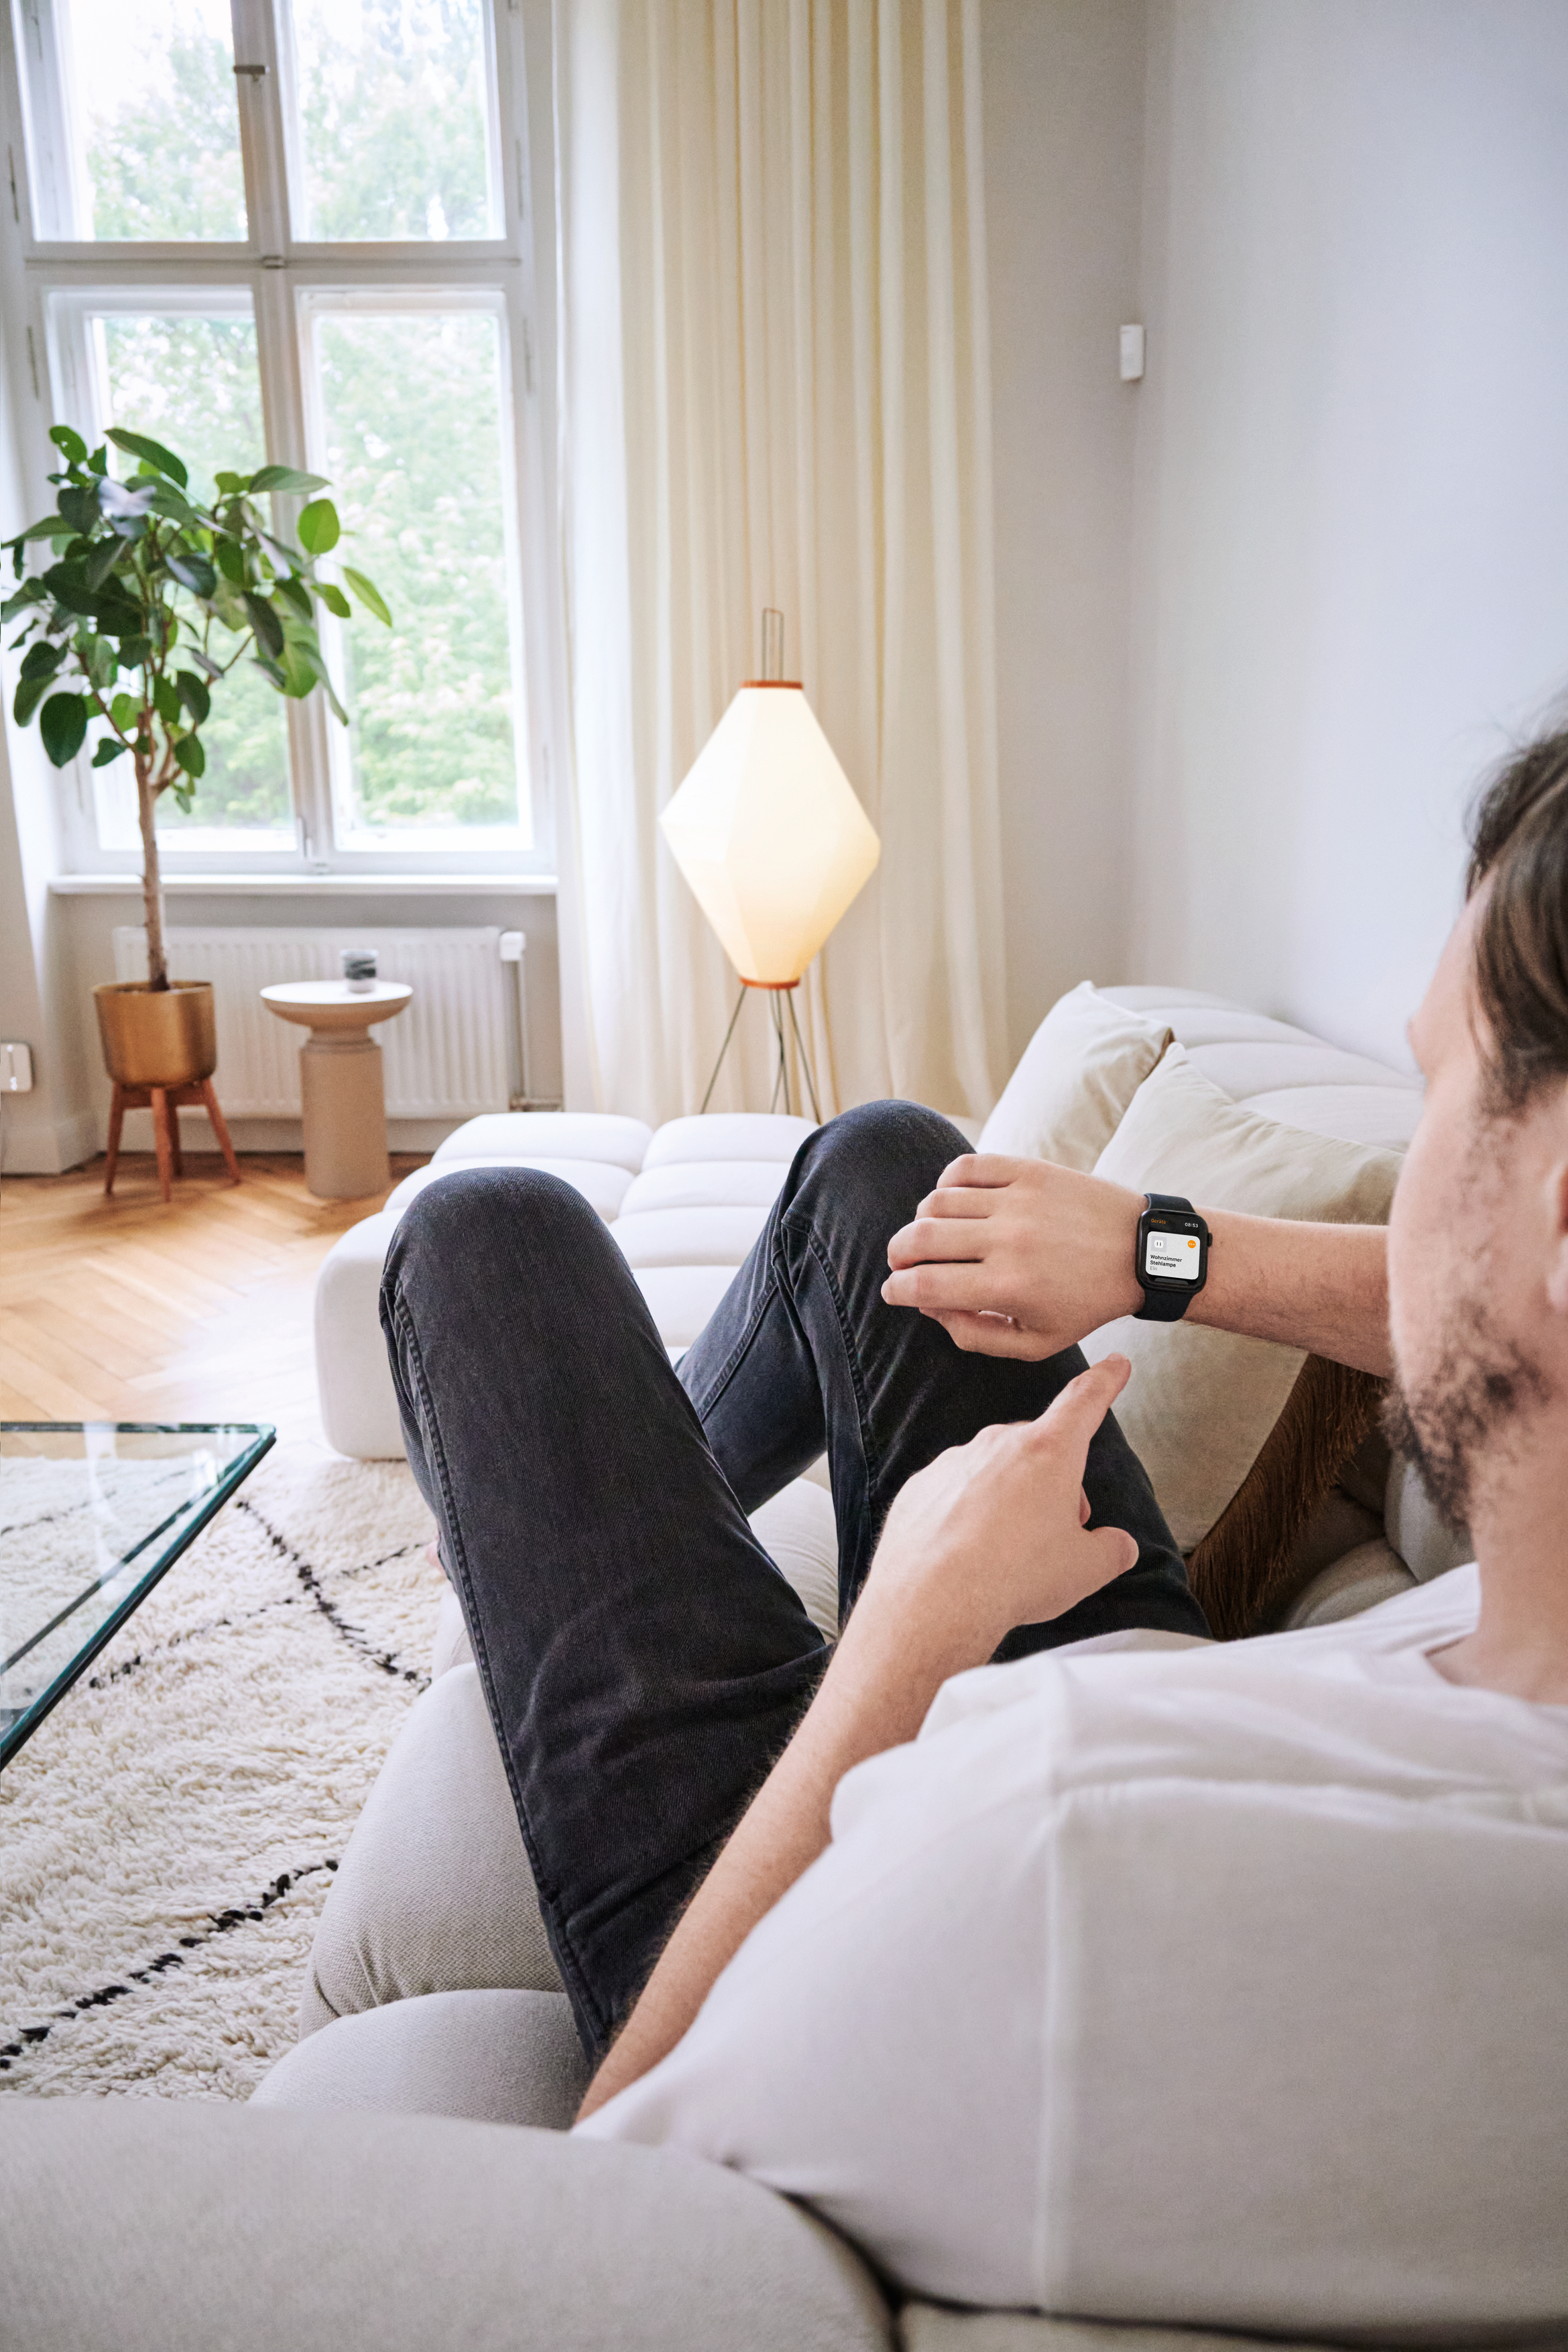 Bosch Smart Home steuerbar über Apple Watch